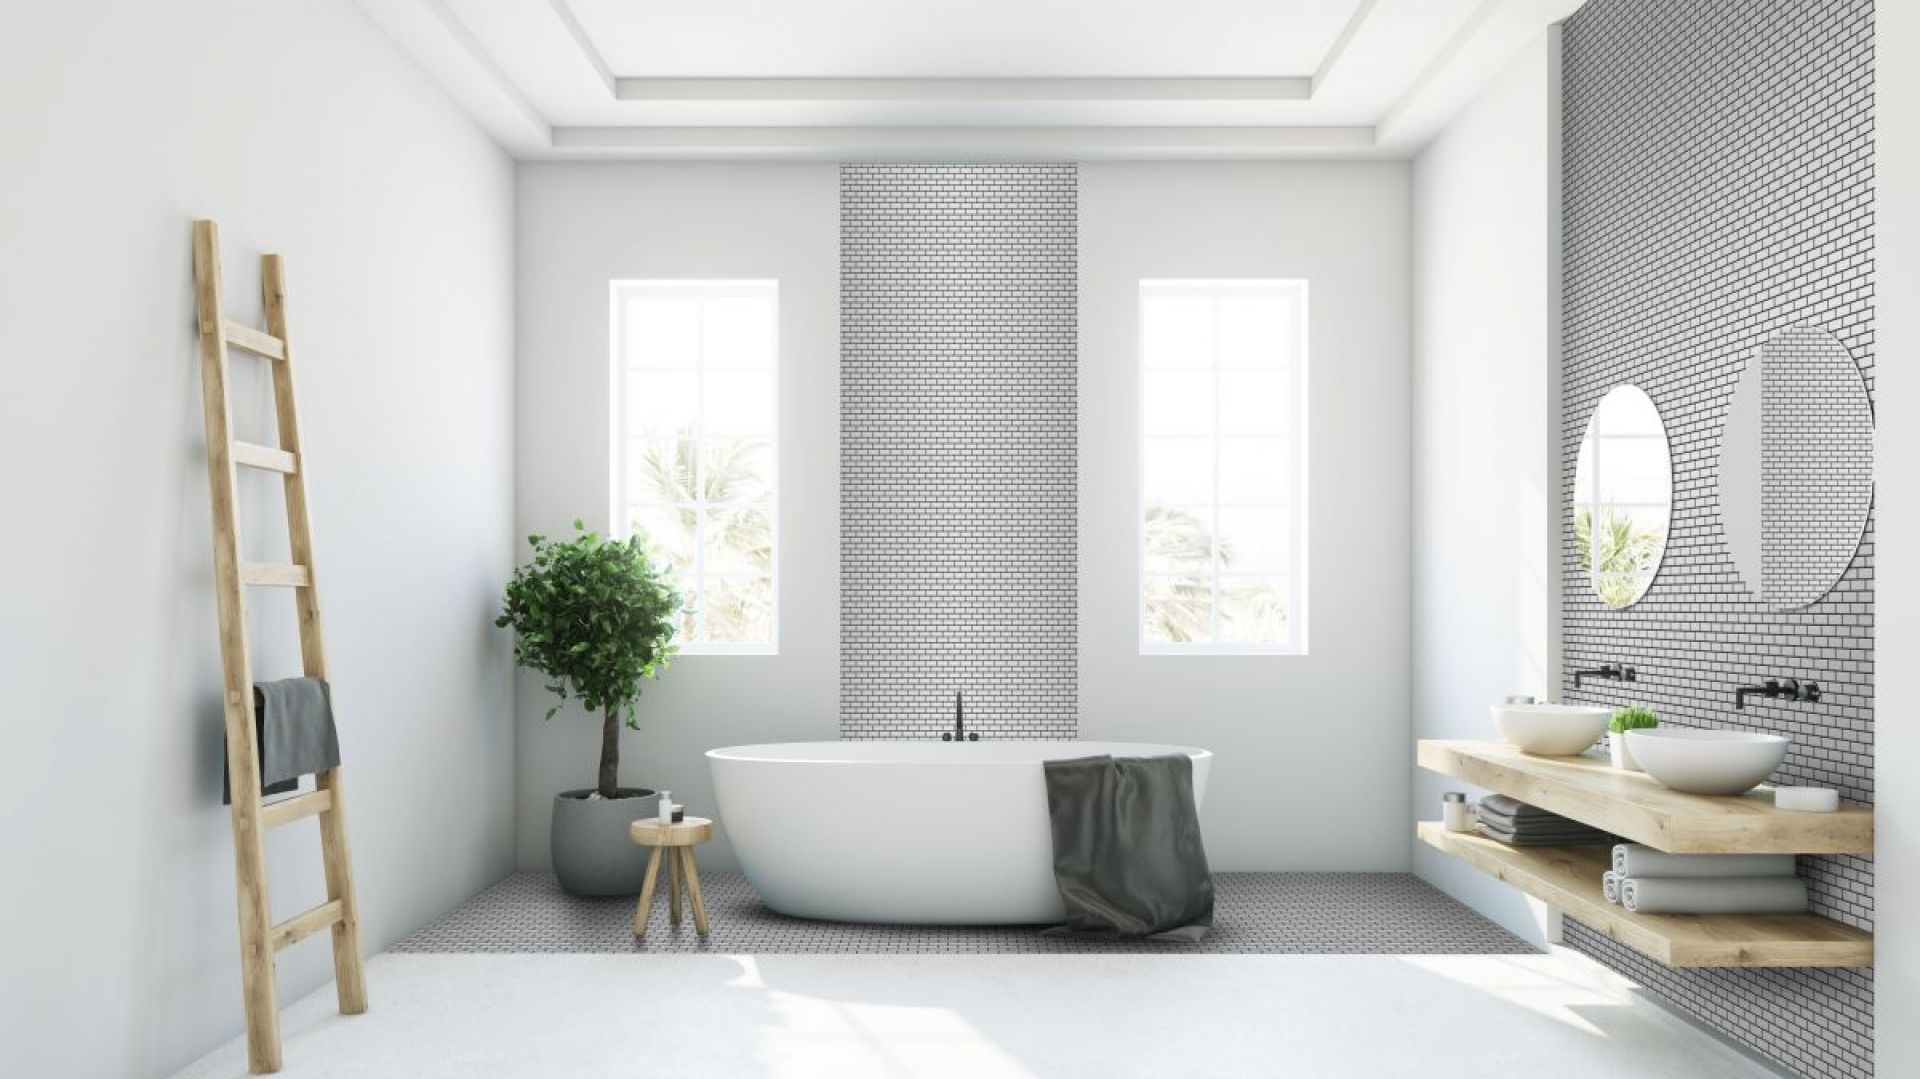 Modna łazienka: wybierz mozaikę w ponadczasowej szarości